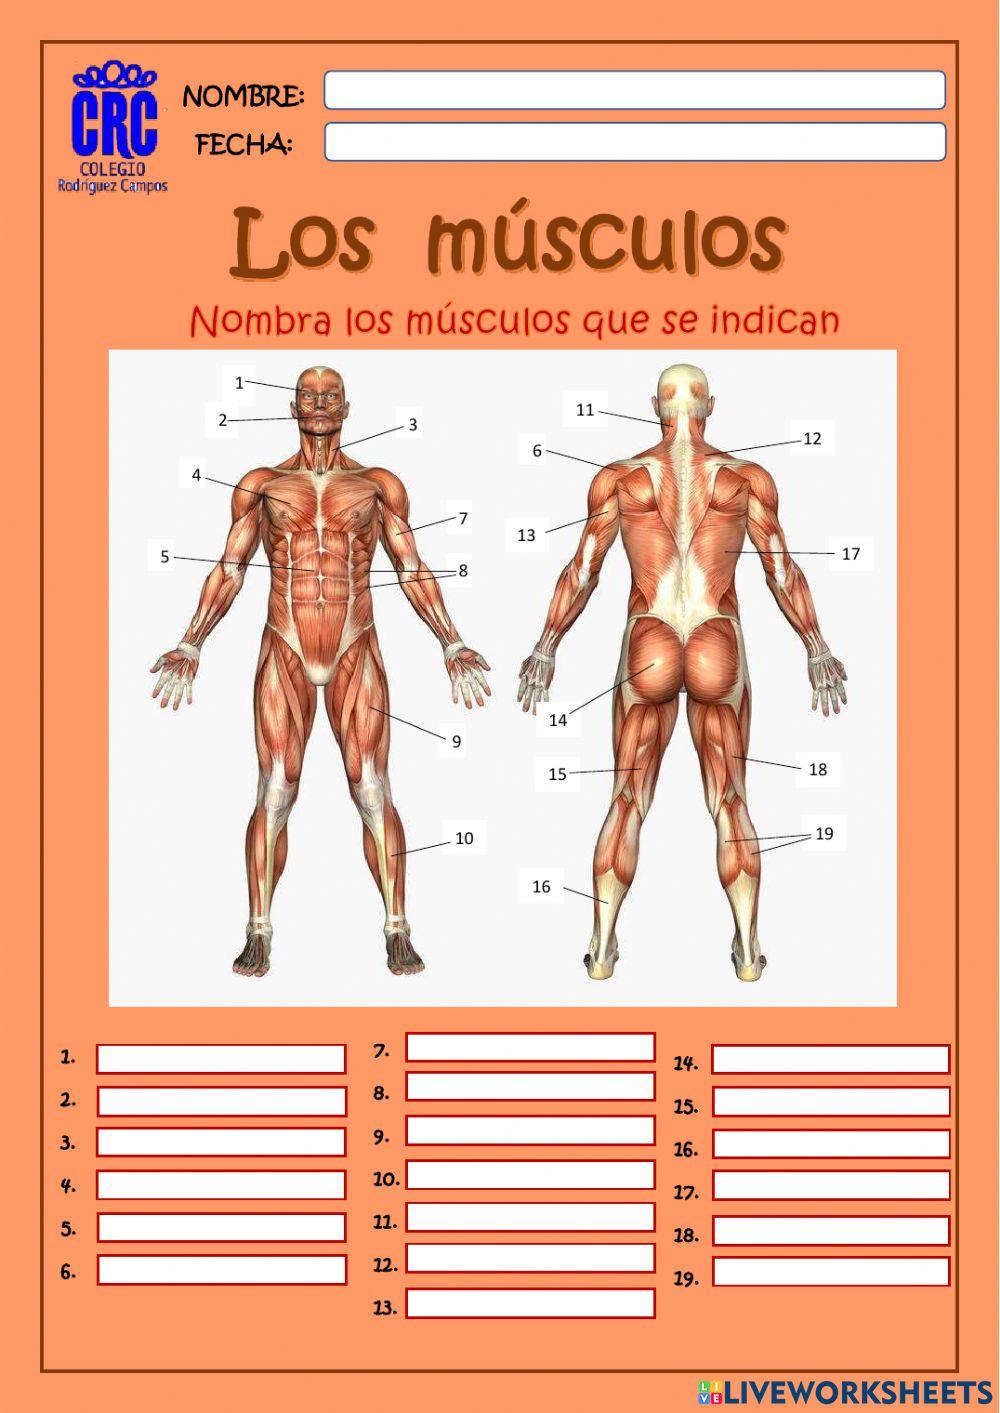 Los músculos